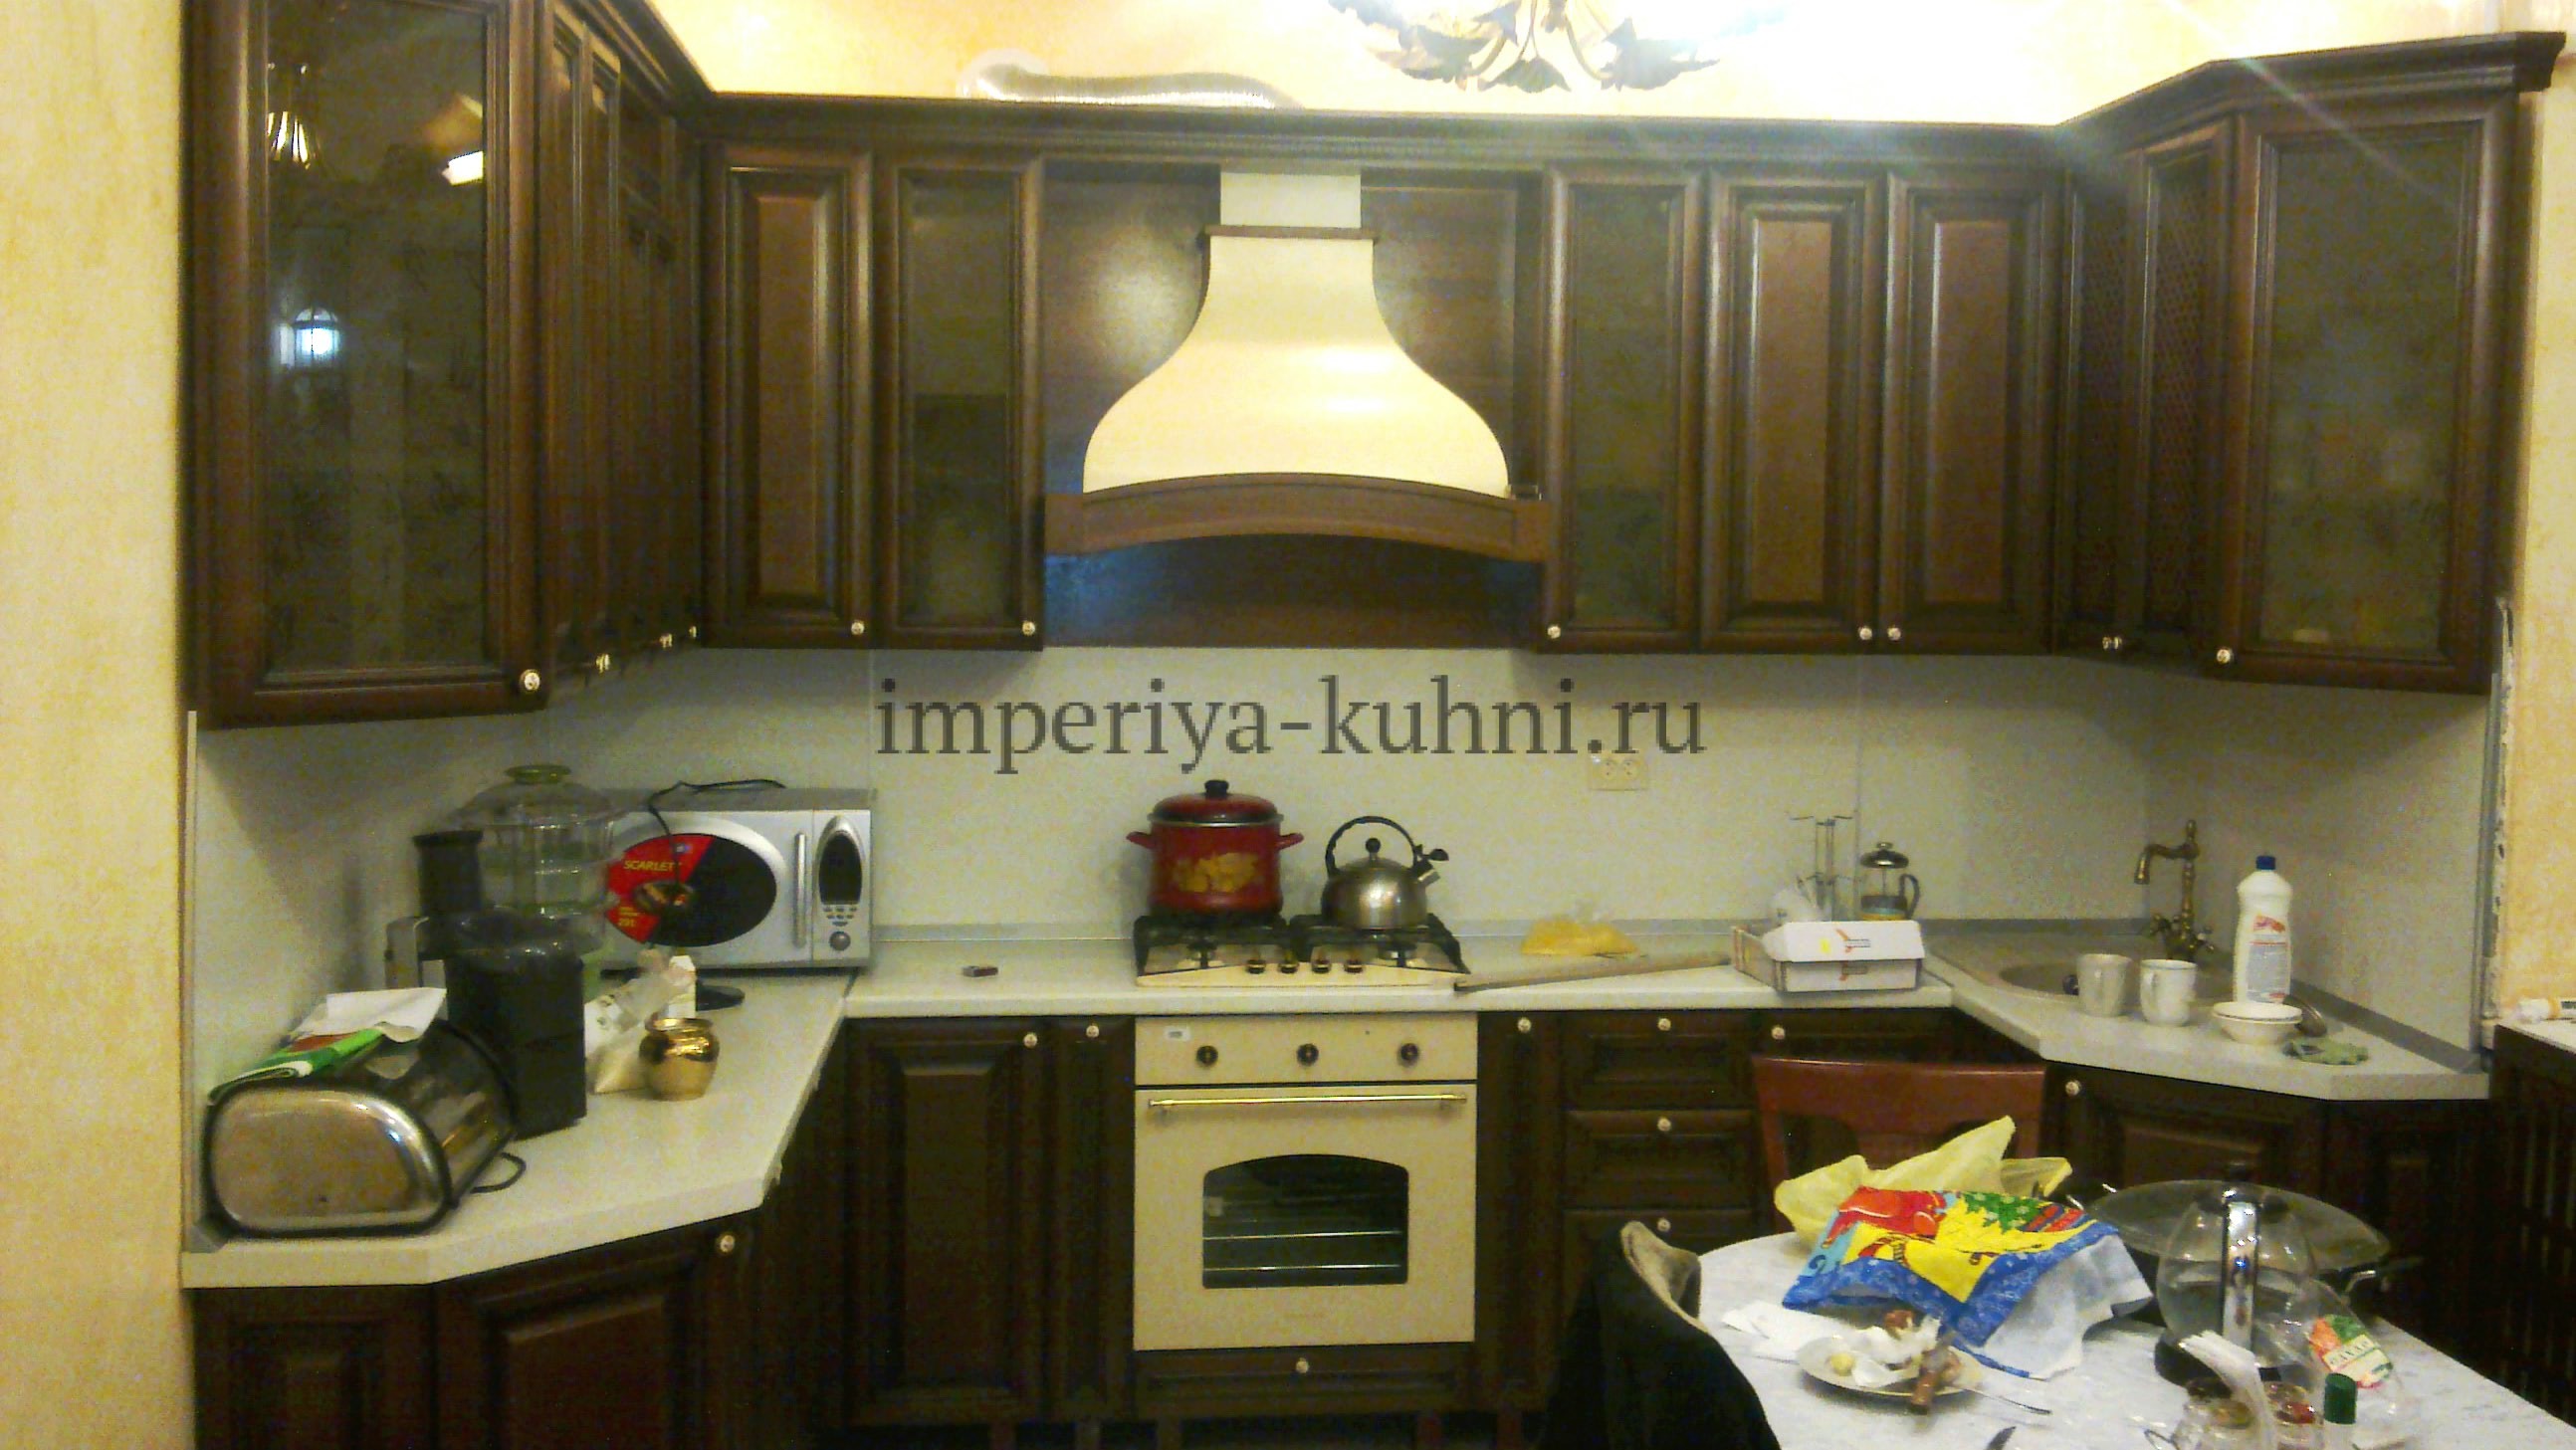 Фото кухни из массива ольхи. Модель- Ника. Цвет- темный.